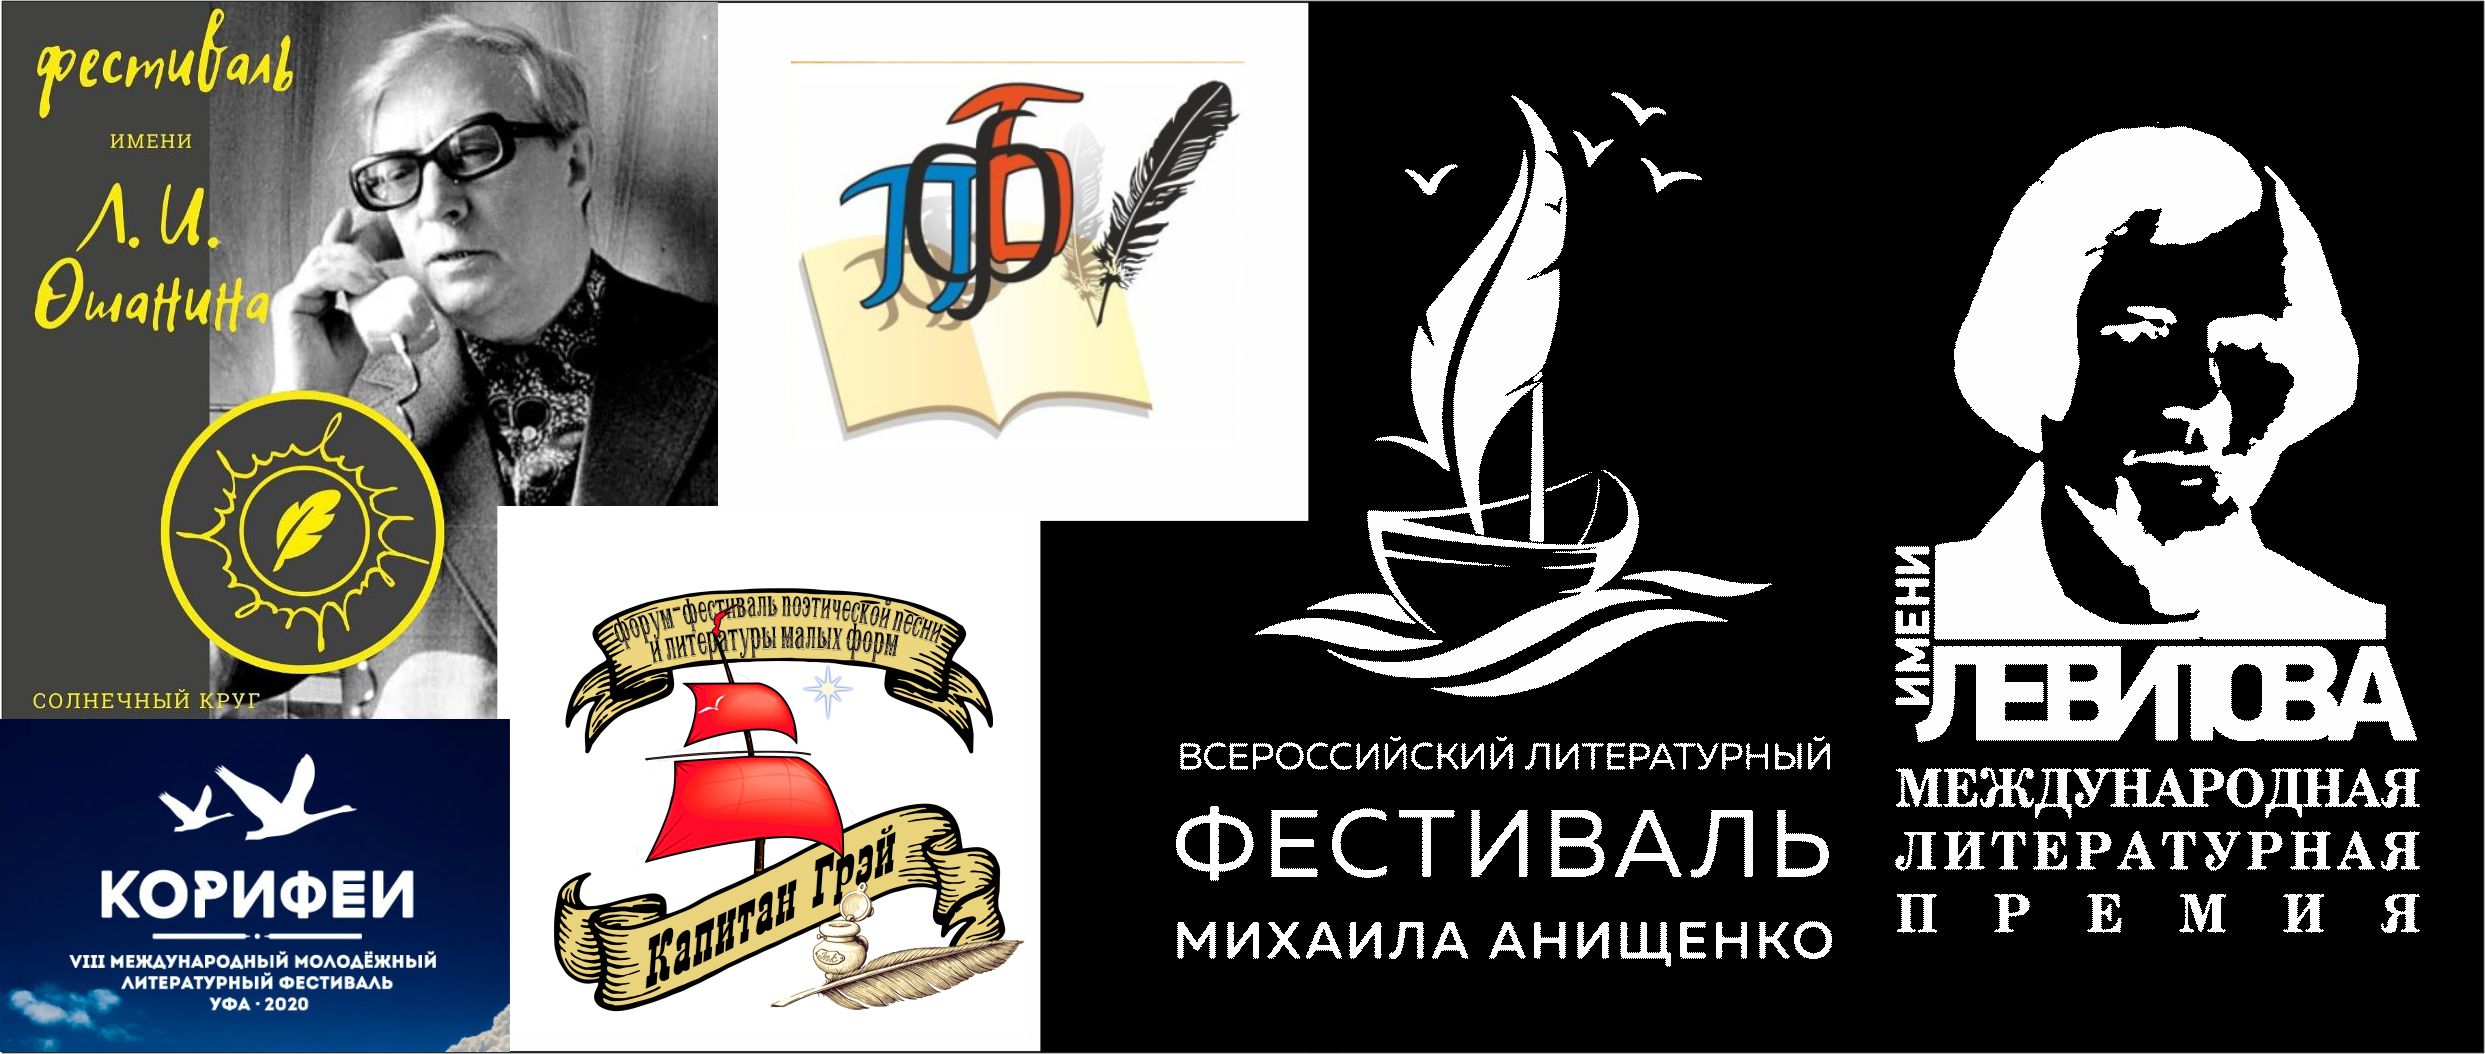 Содружество литературных фестивалей России